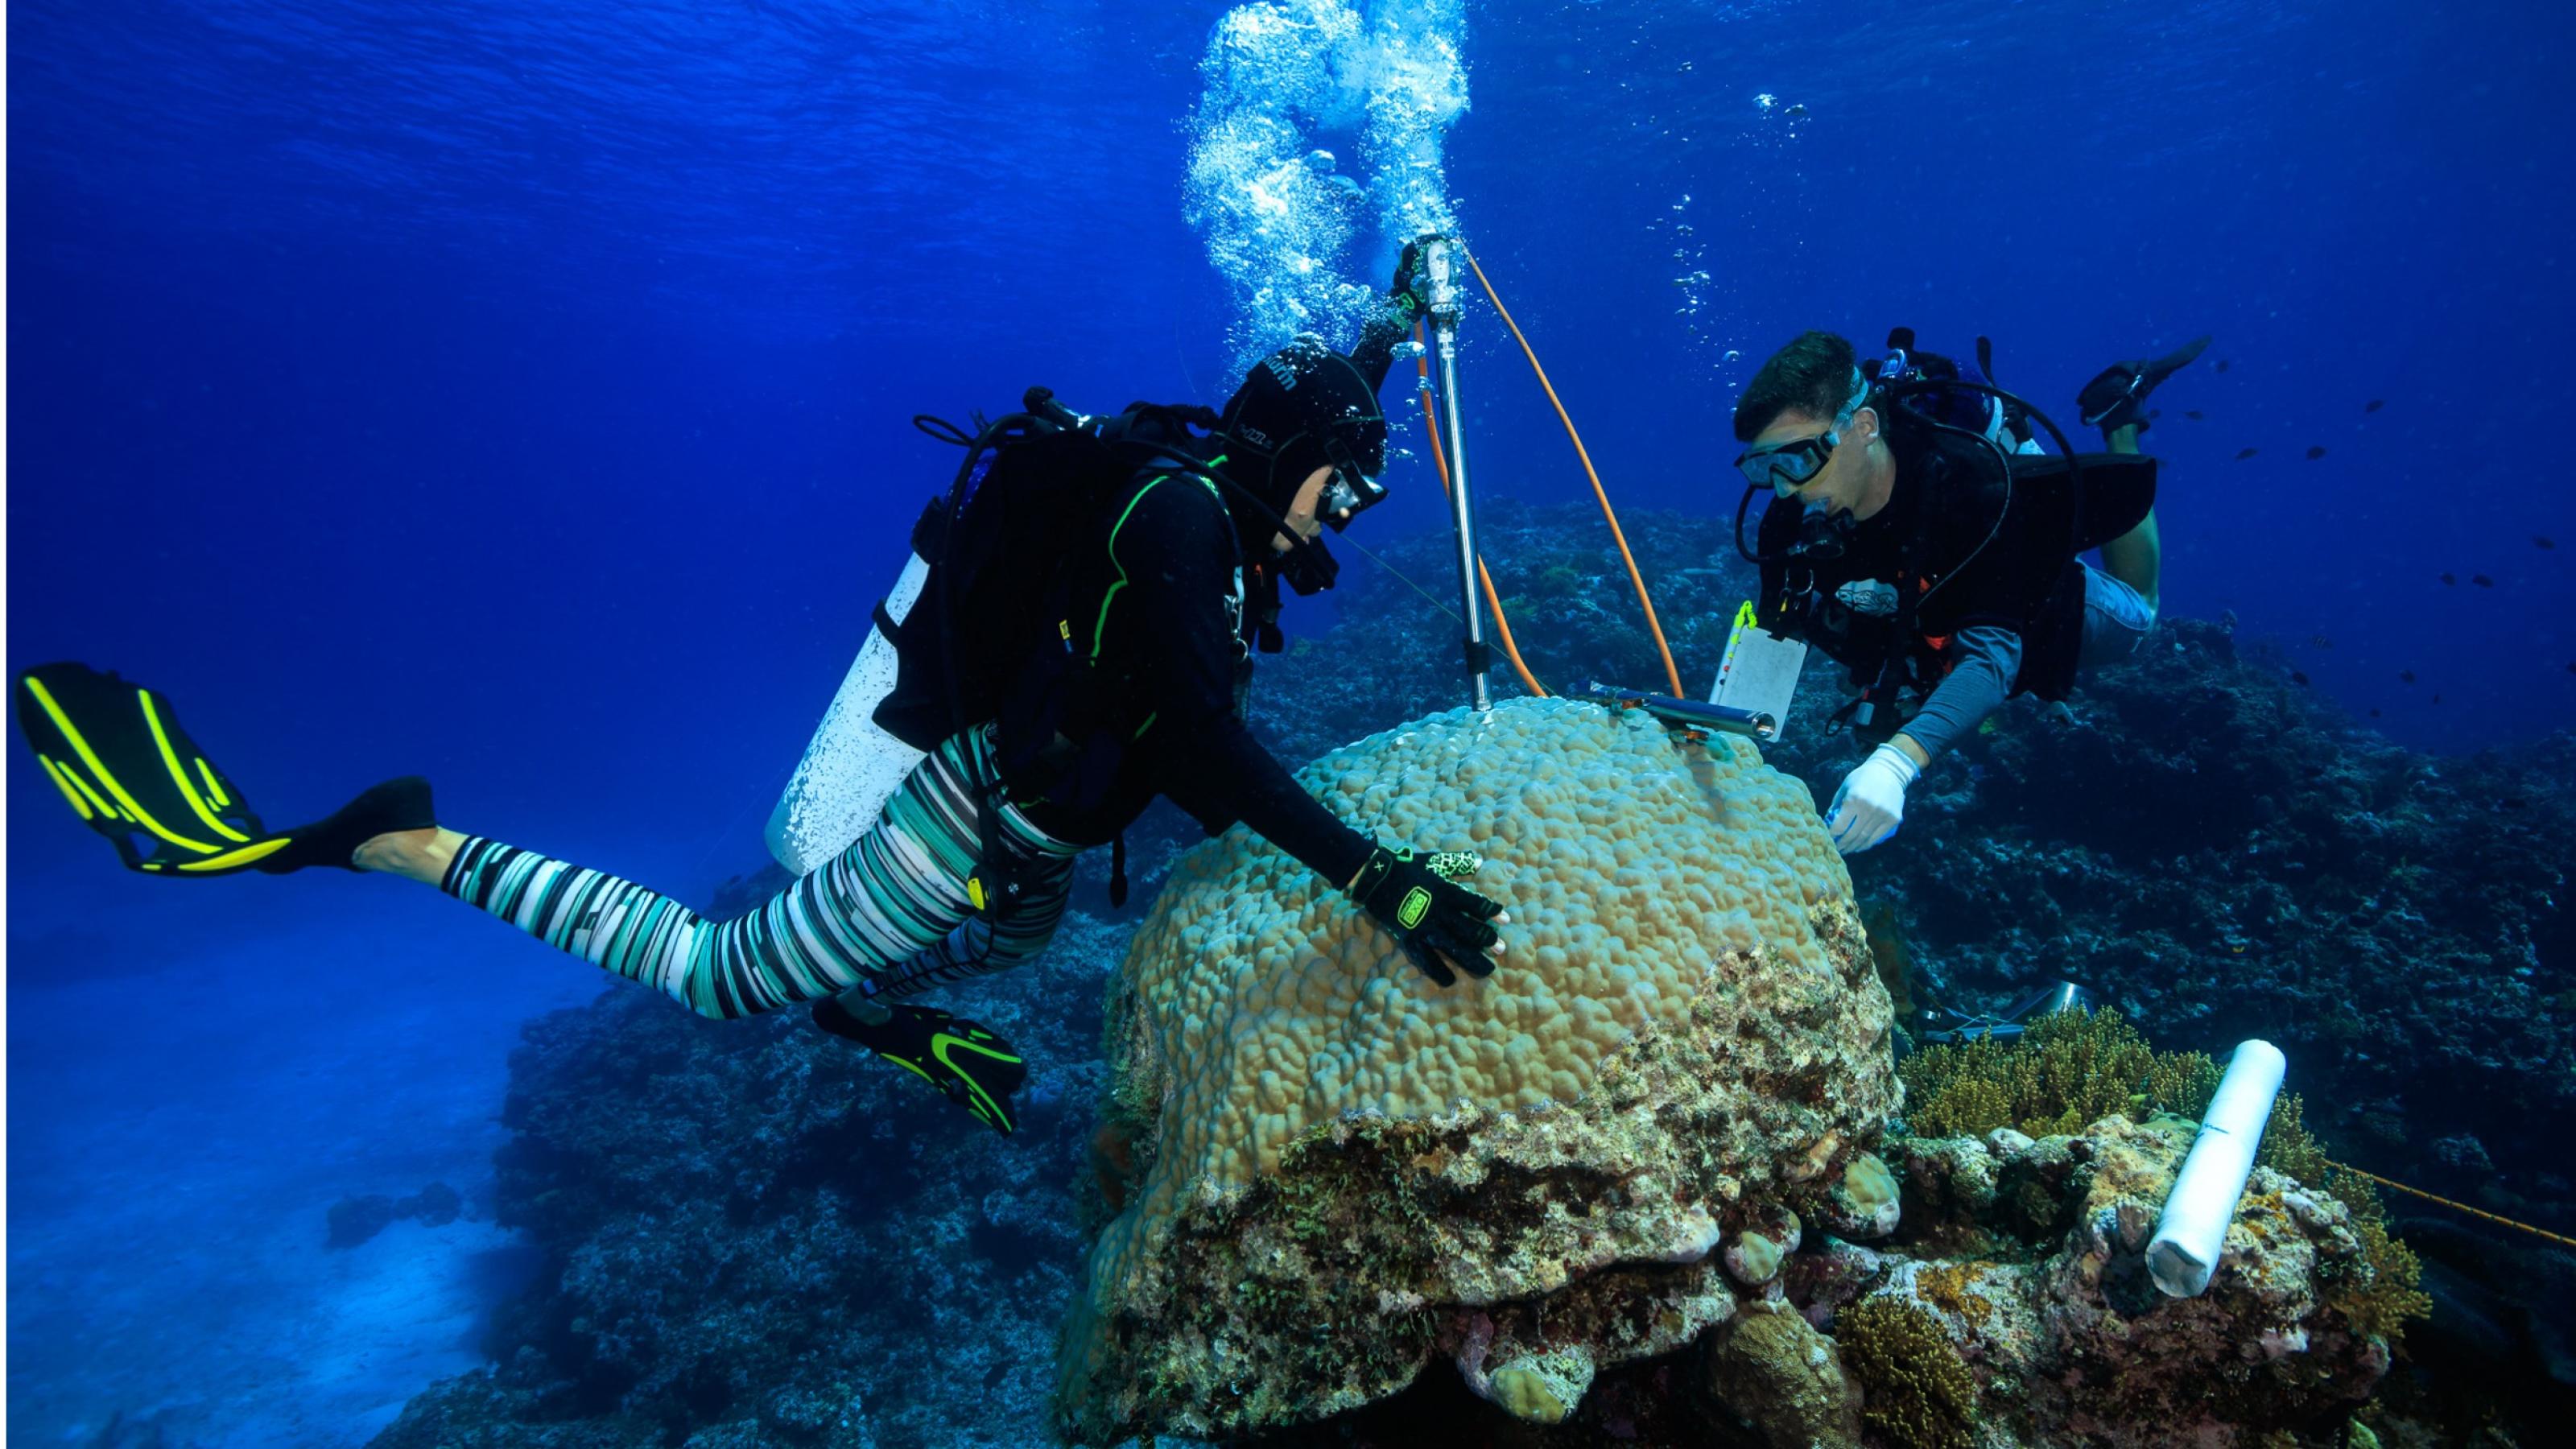 Taucher machen Messungen an einer Koralle.